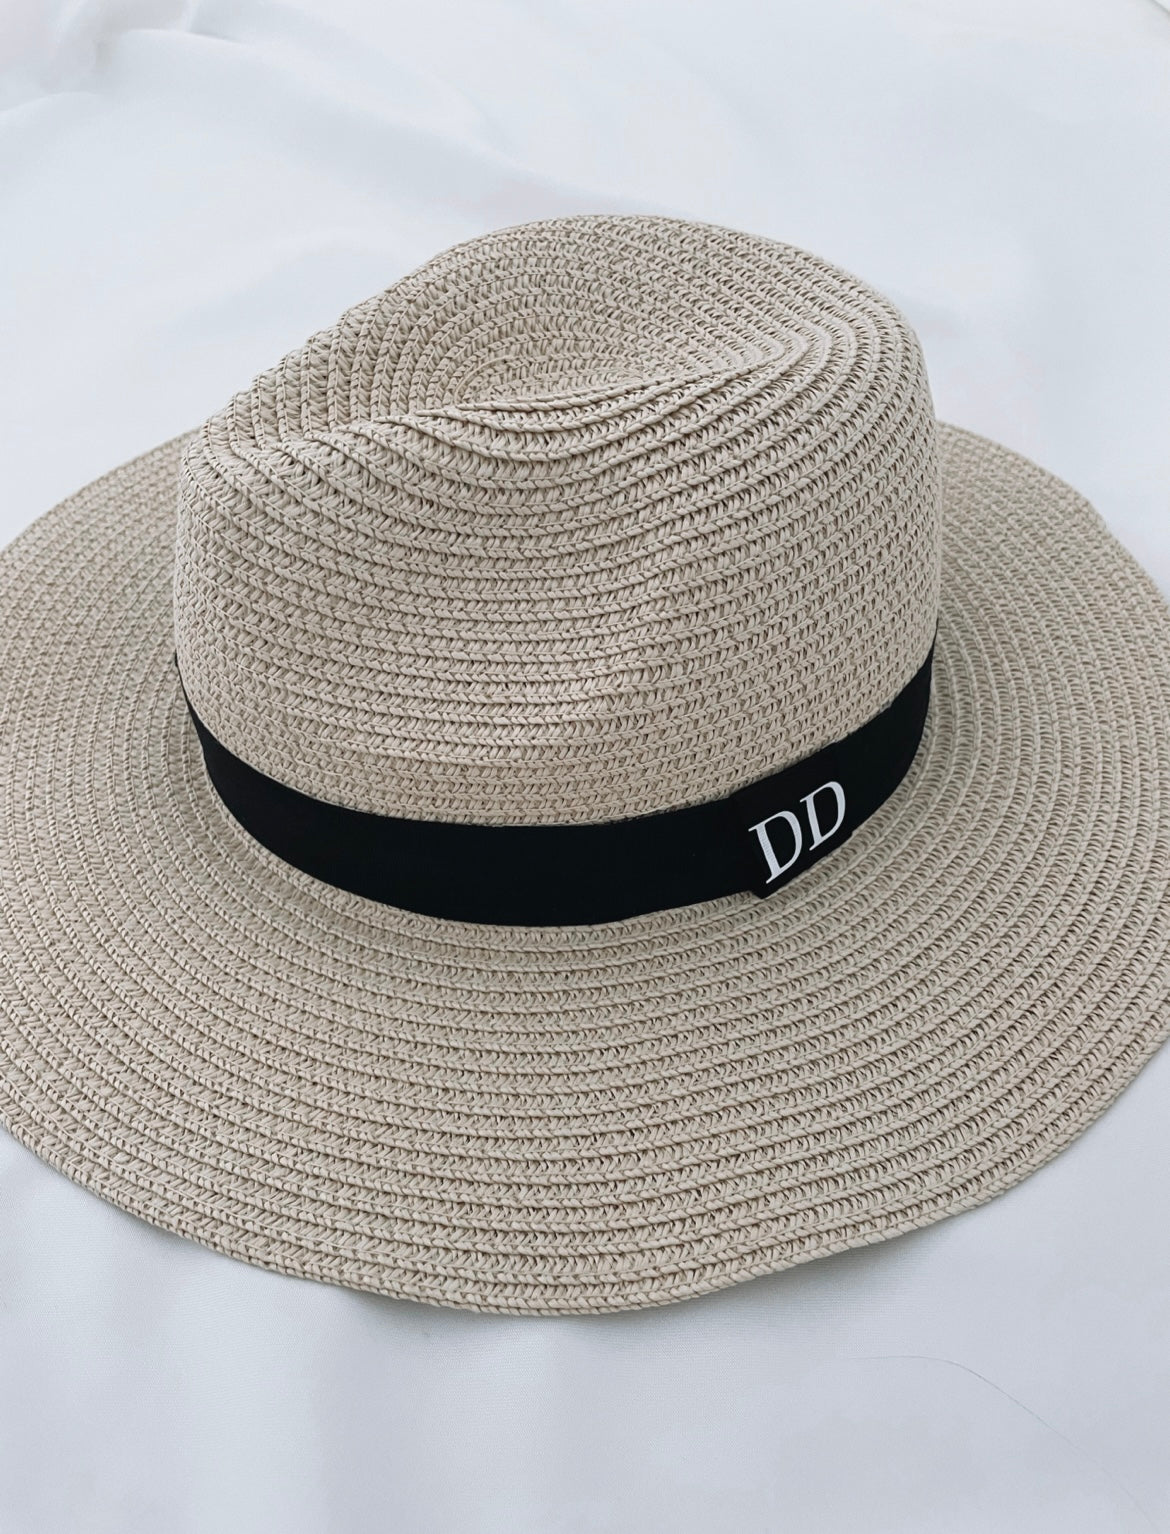 Personalised Fedora Straw Beach Hat